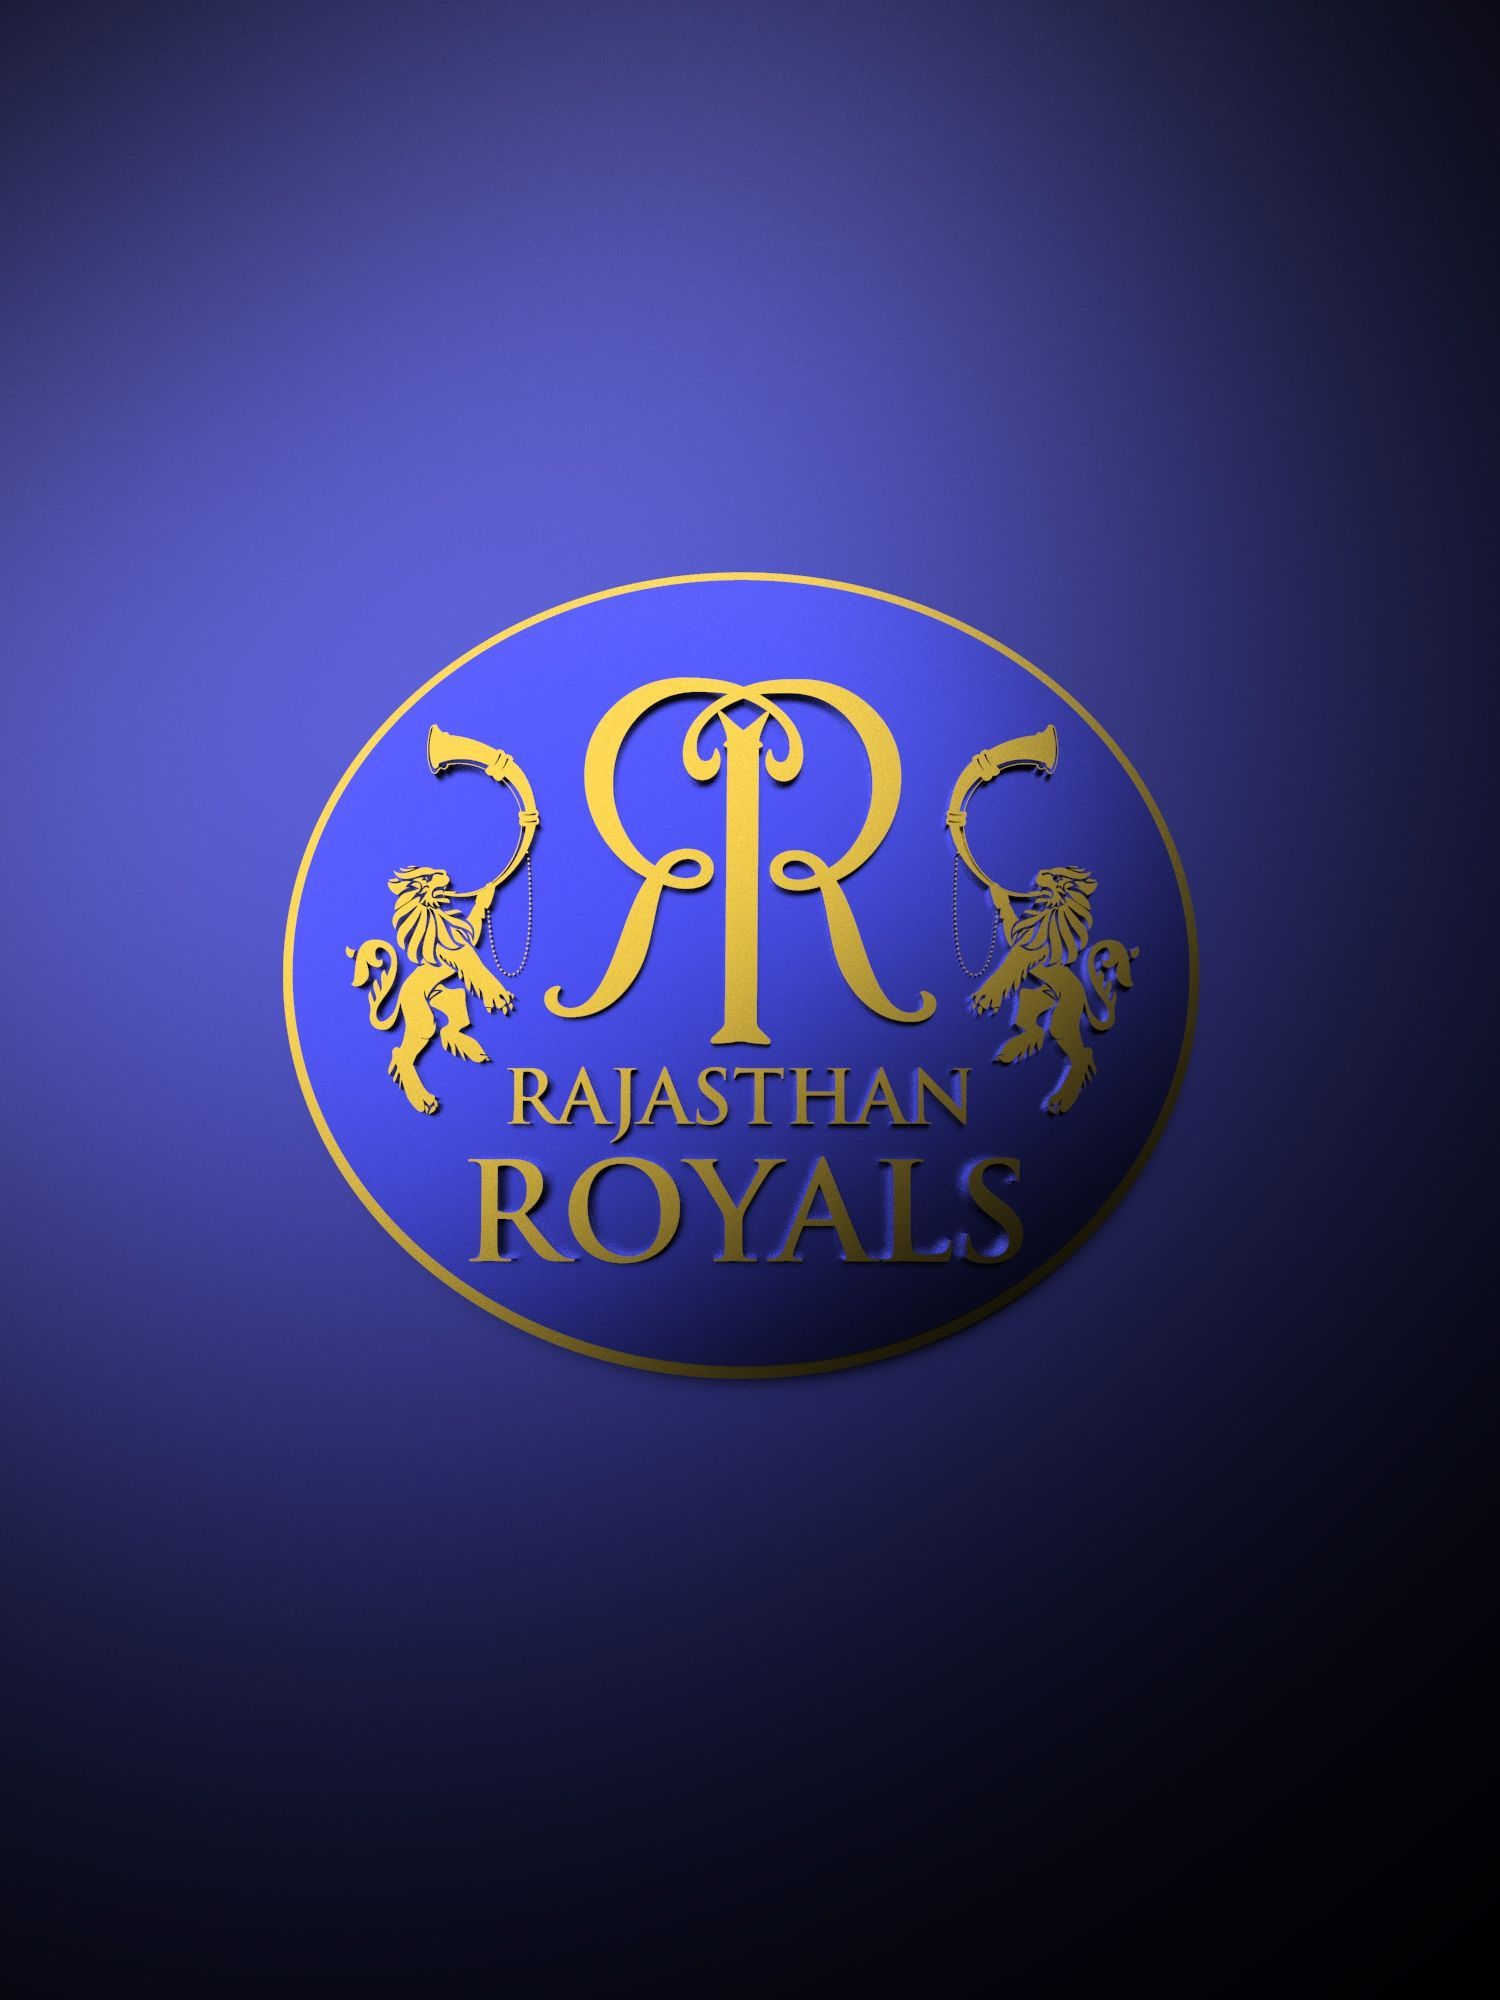 Rajasthan Royals IPL metallic logo poster painting. Ipl, Royal logo, Metallic logo